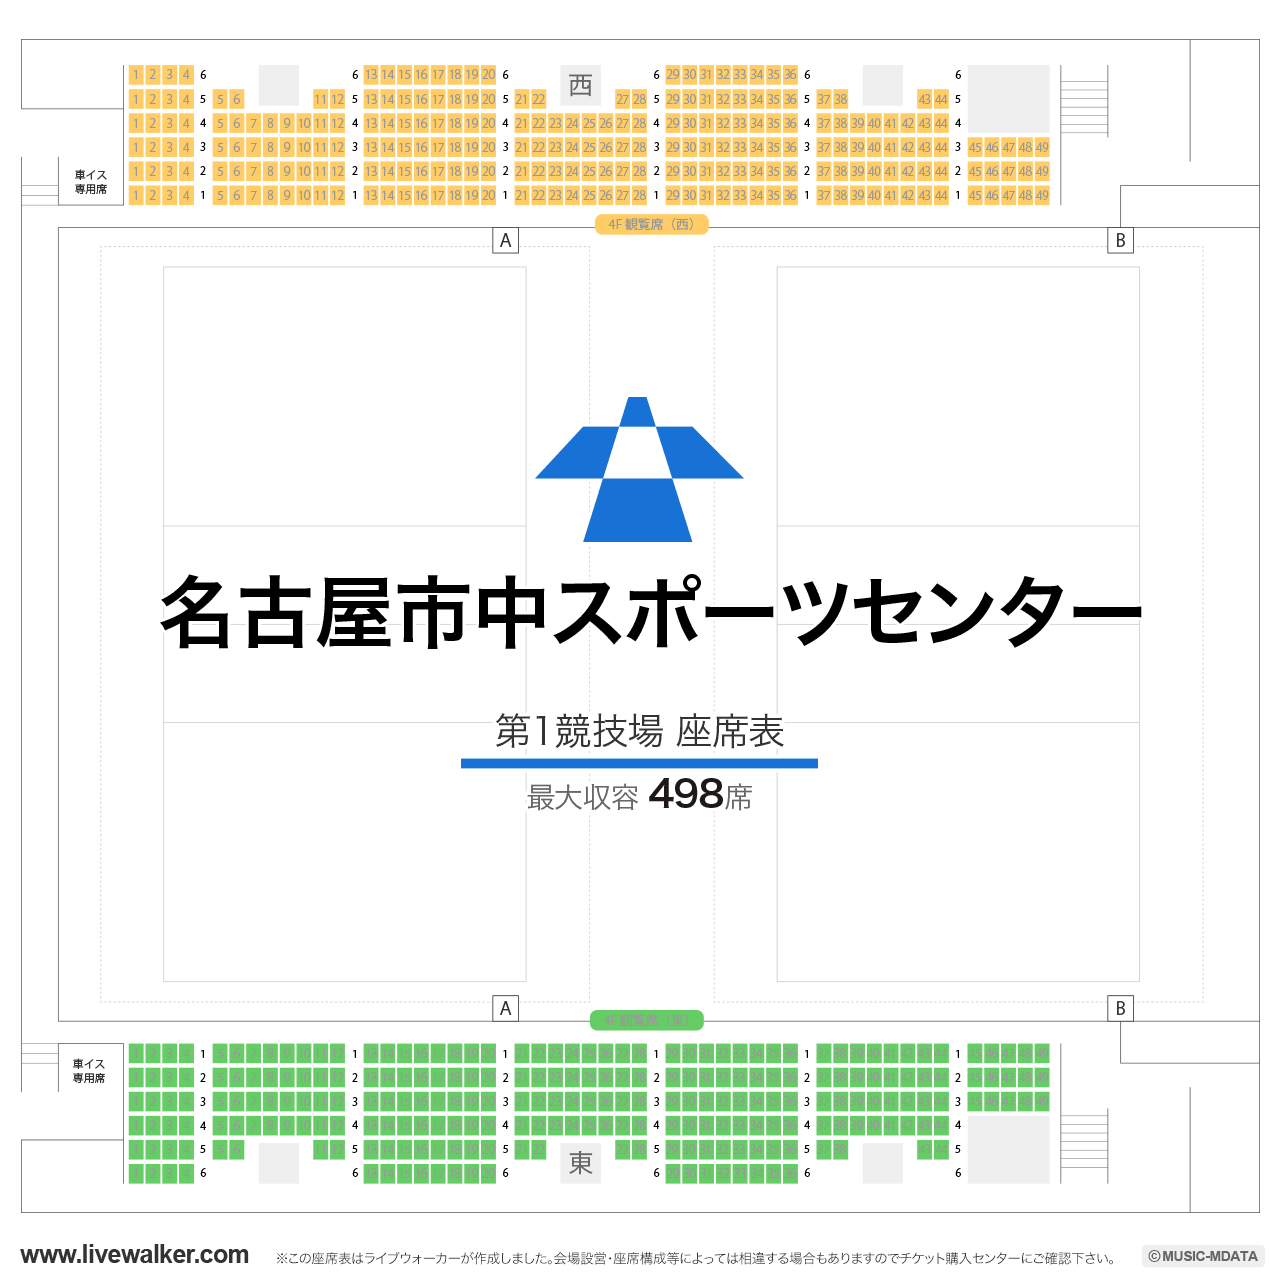 名古屋市中スポーツセンター第1競技場の座席表